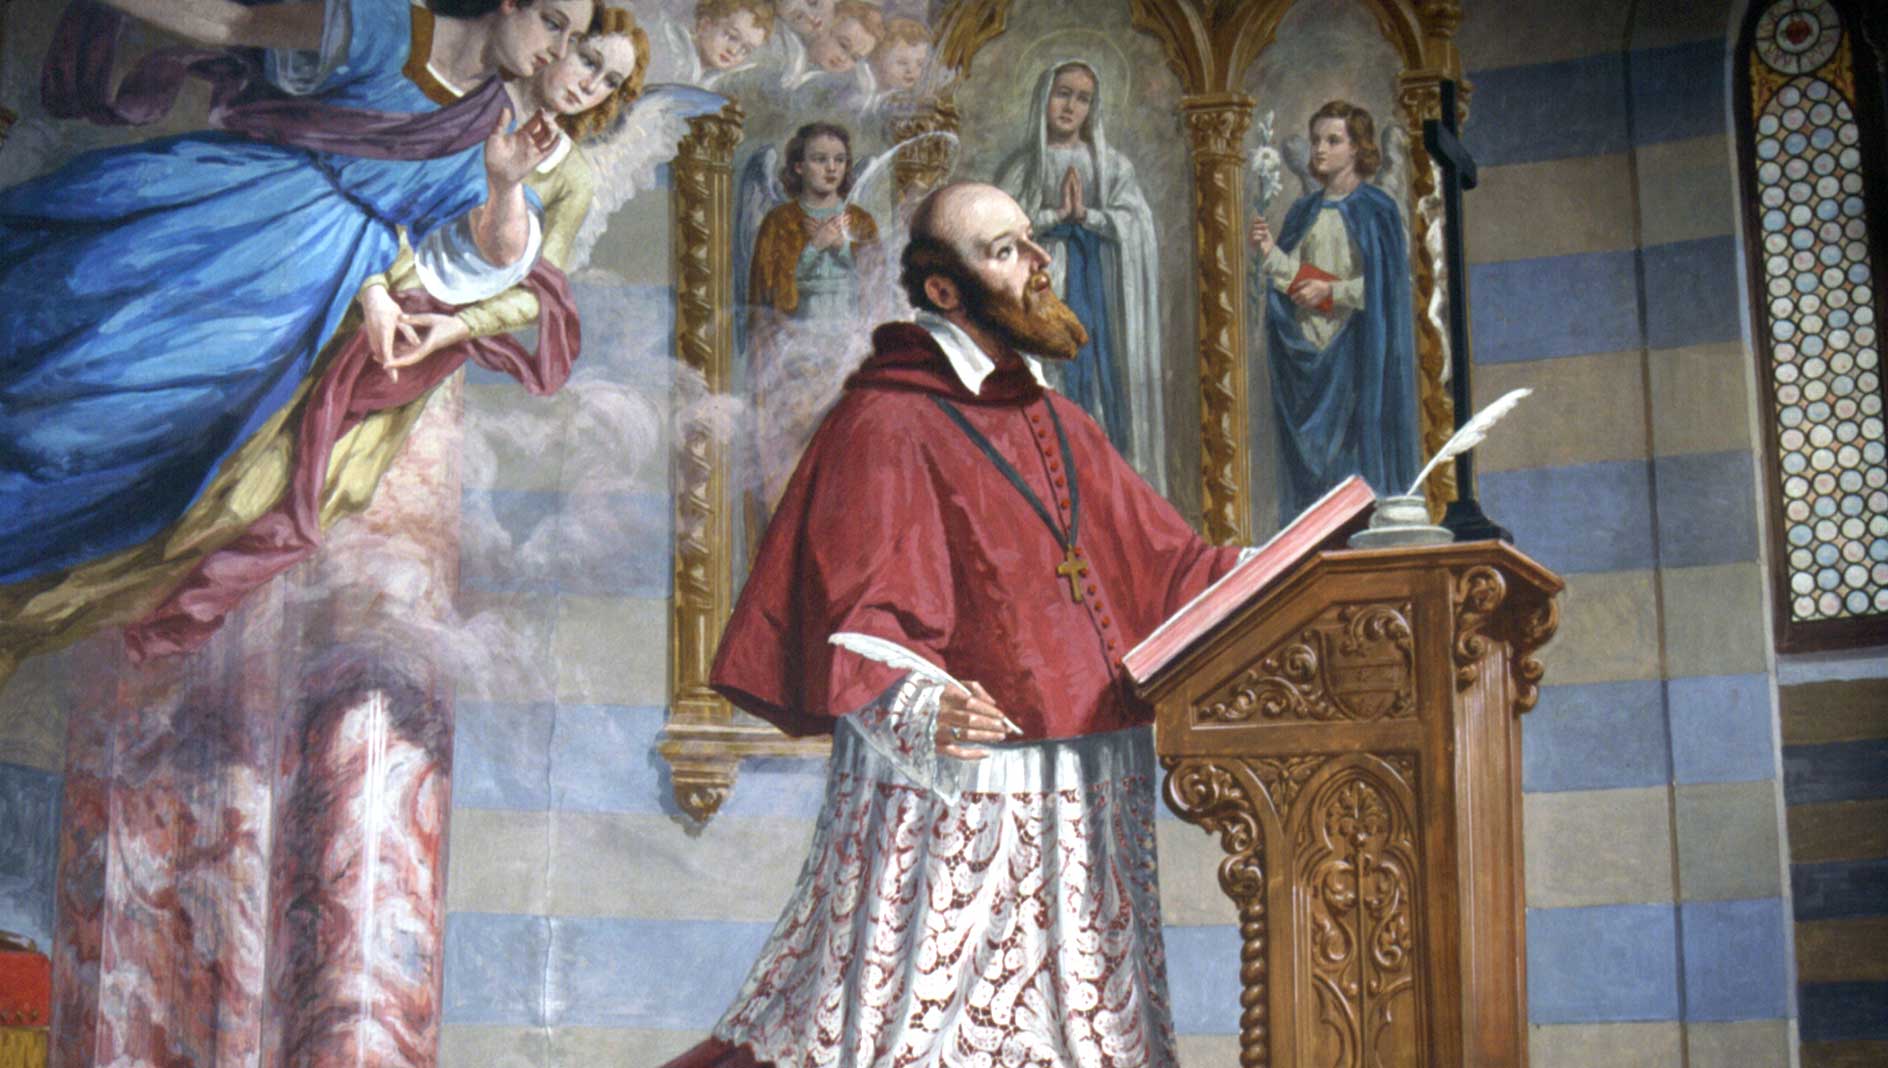 San Francesco di Sales